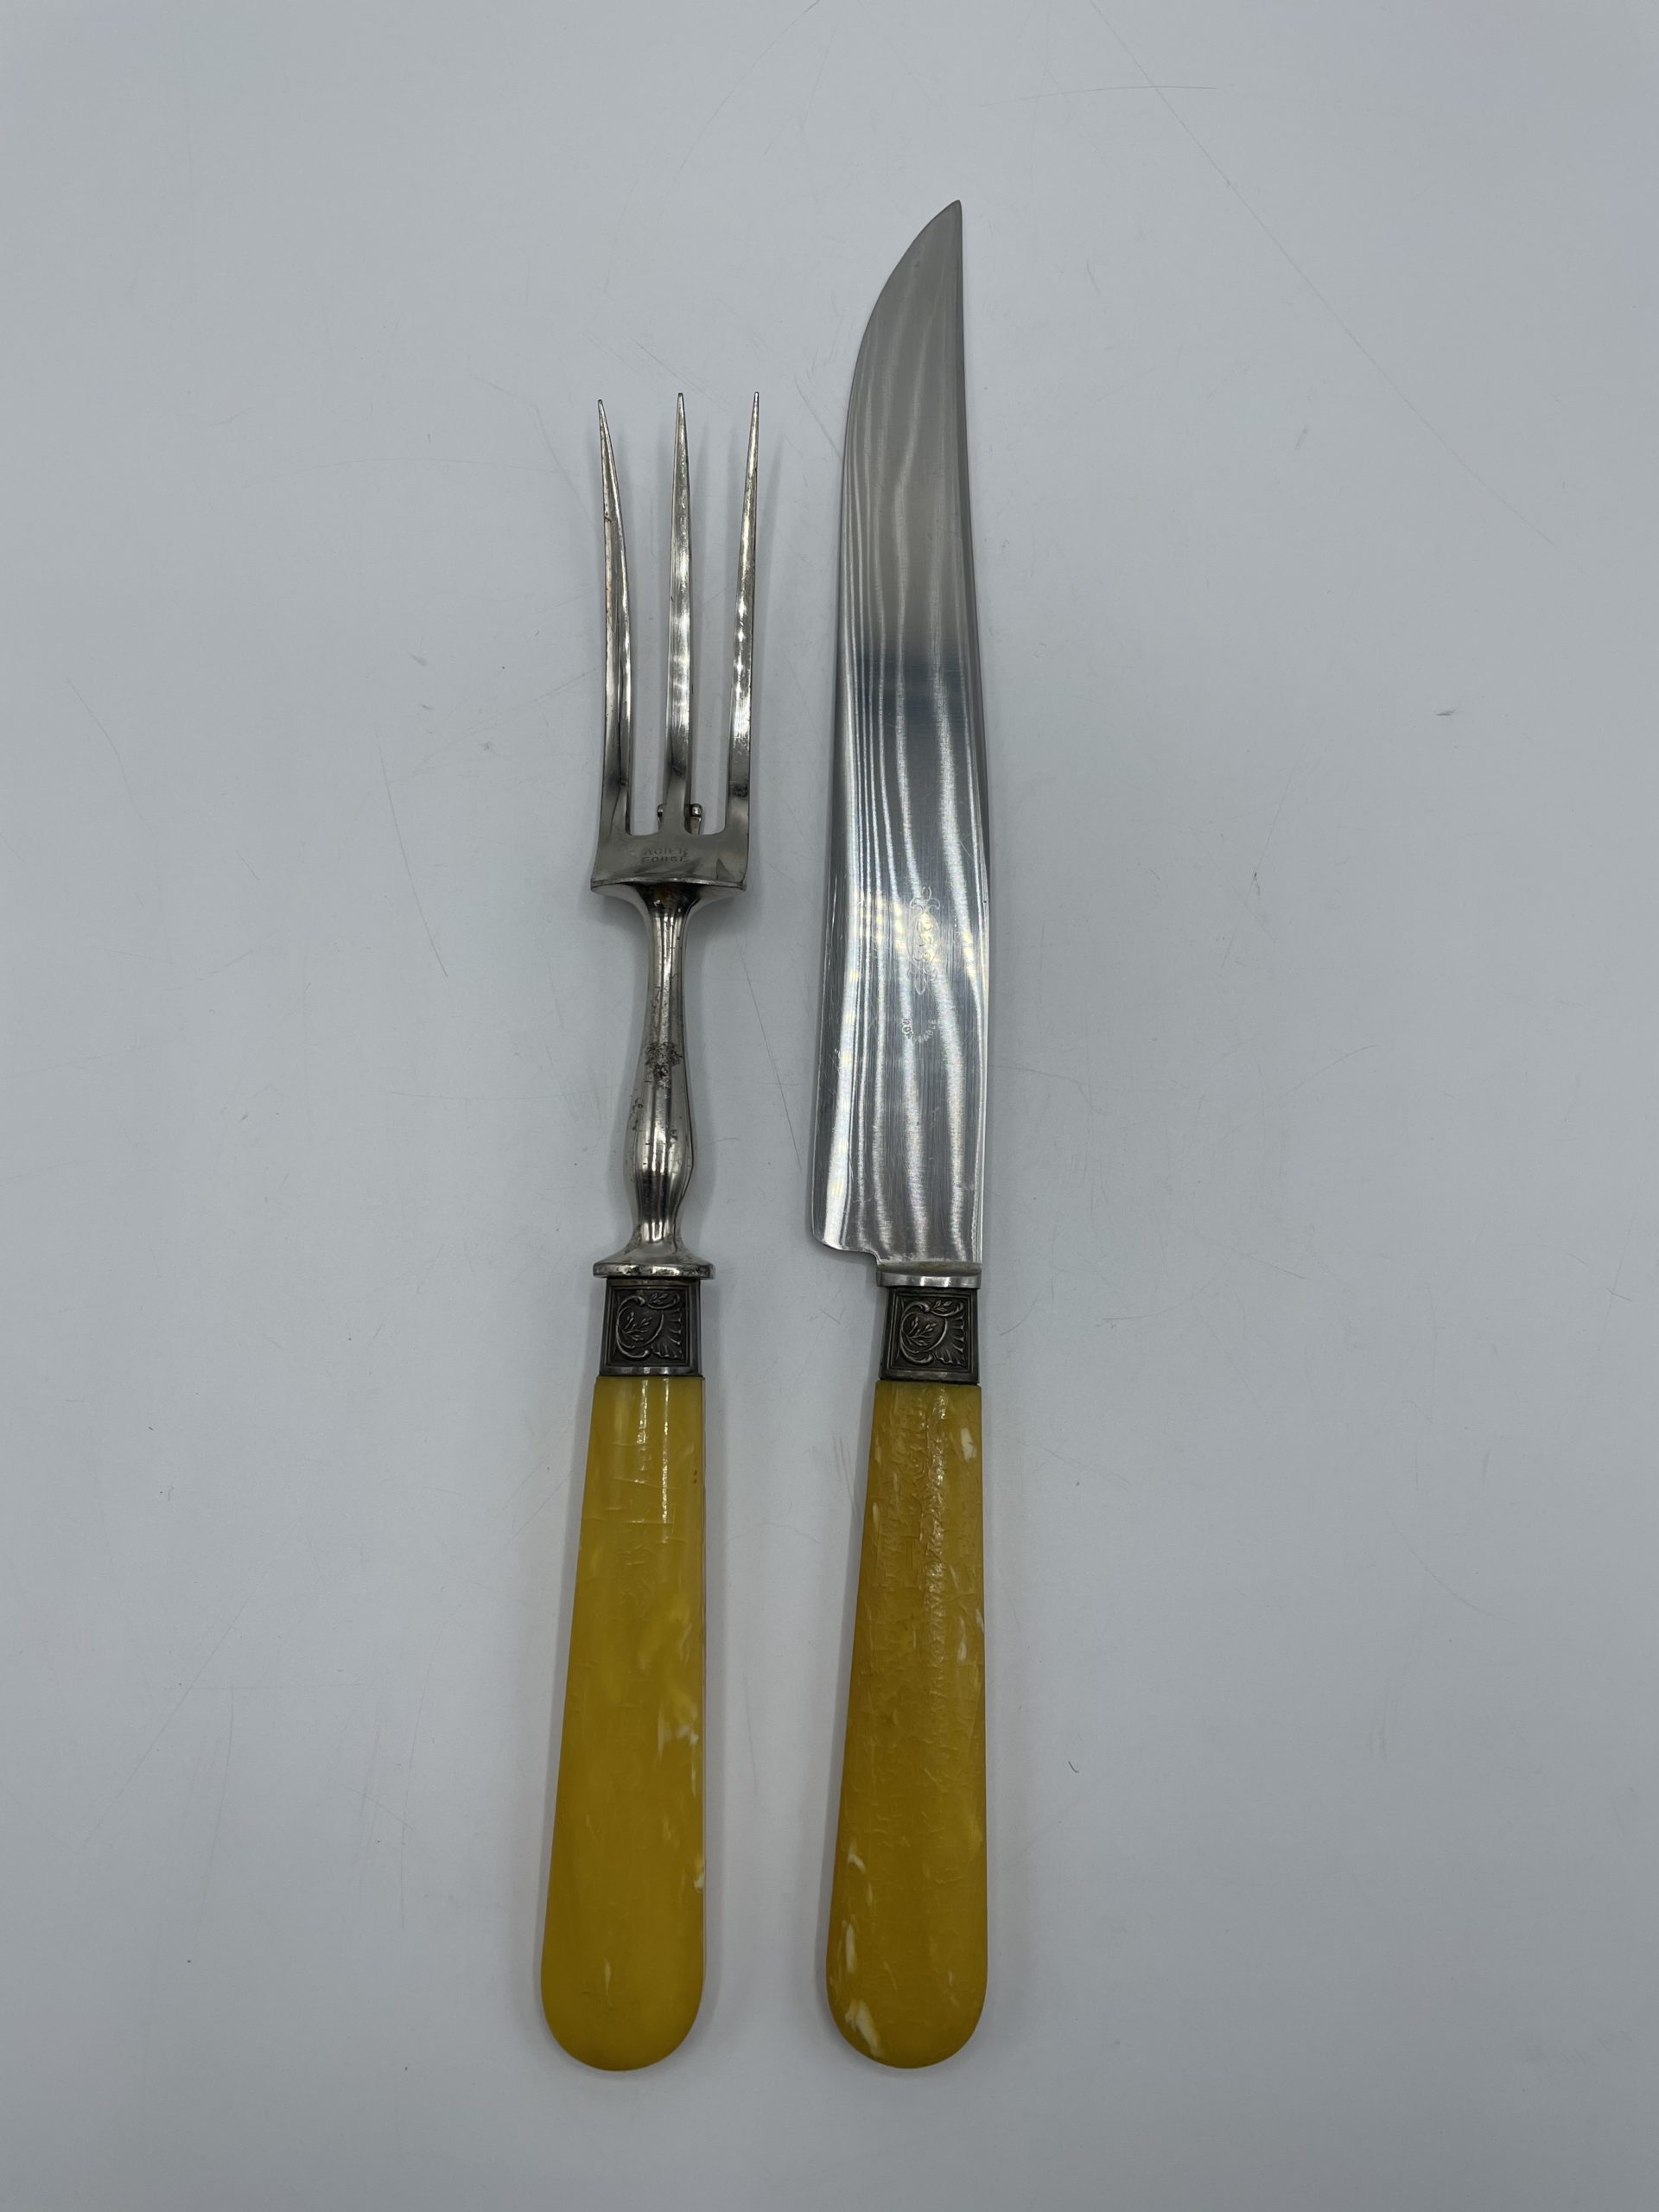 Fourchette Et Couteau De Plat Photo stock - Image du kitchenware